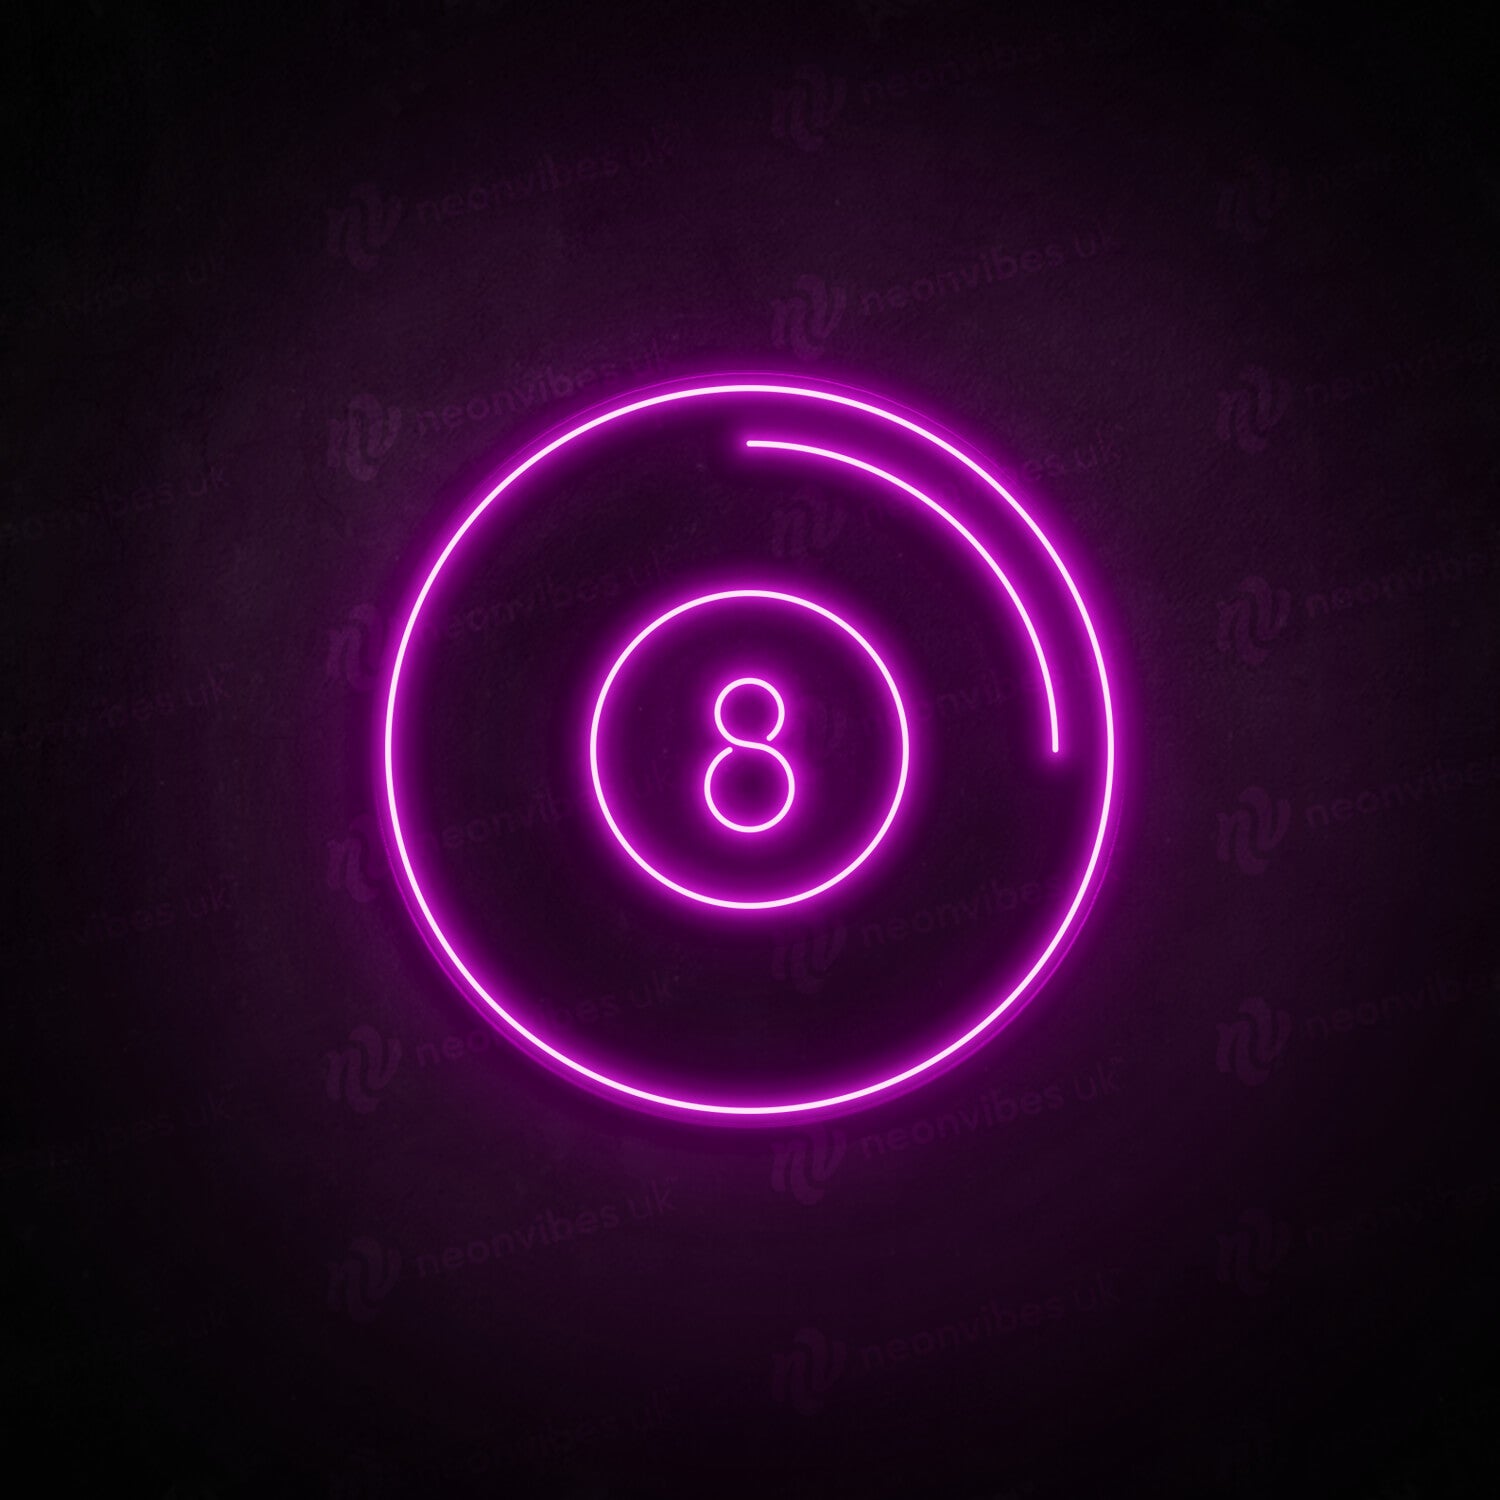 8 ball neon sign